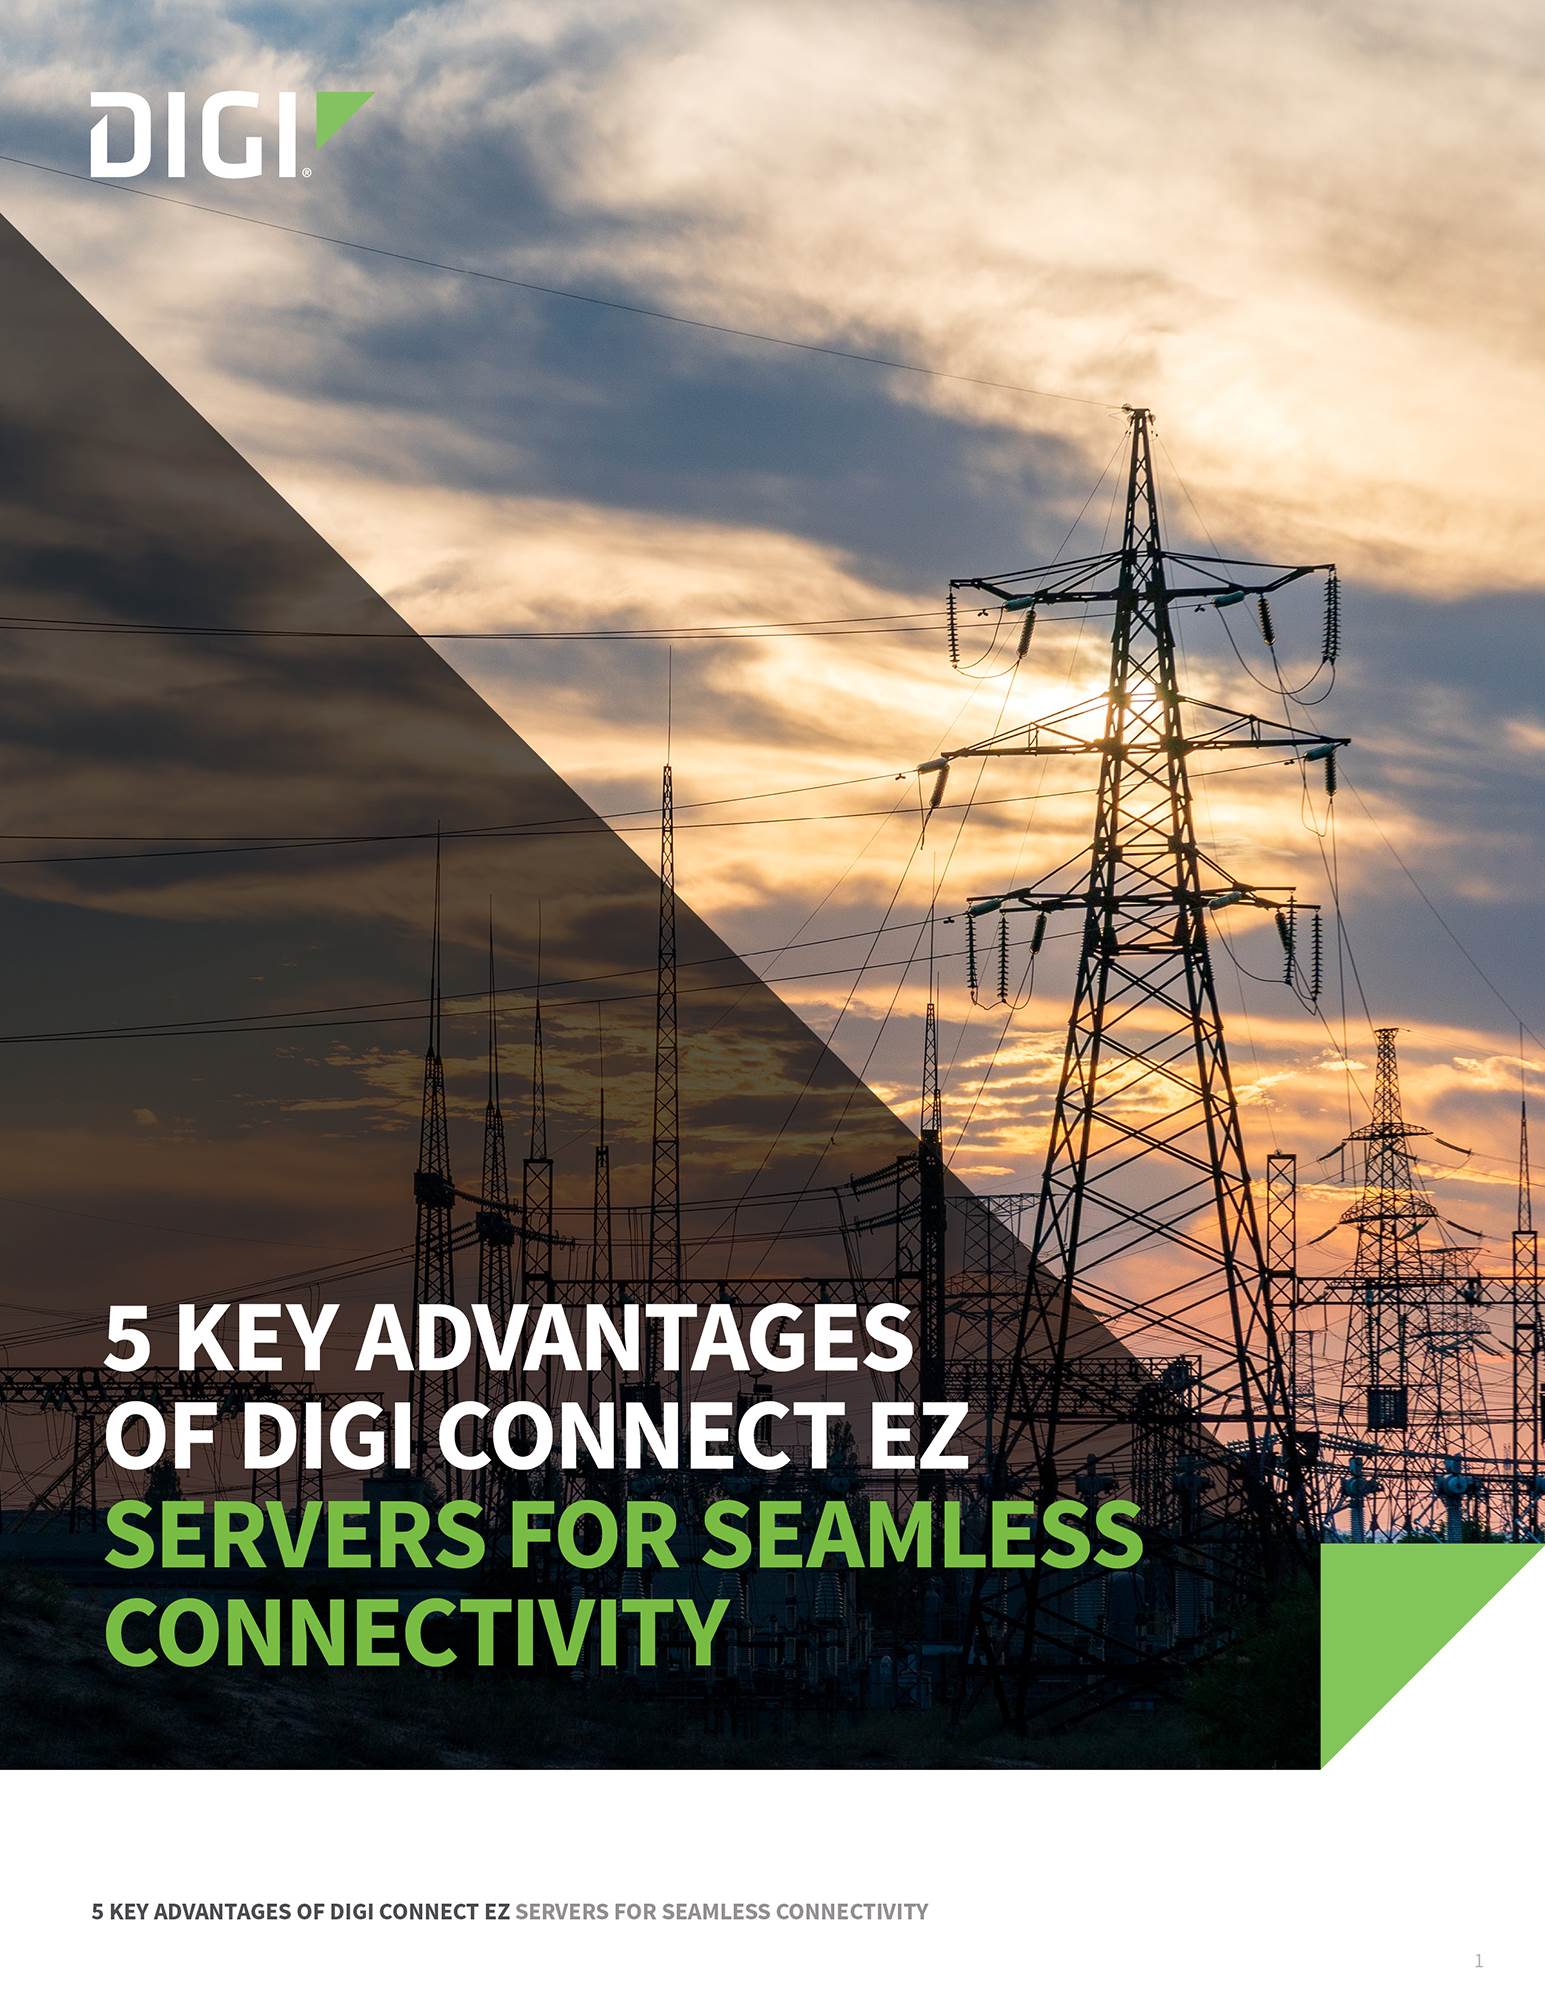 5 avantages clés des serveurs Digi Connect EZ pour une connectivité sans faille